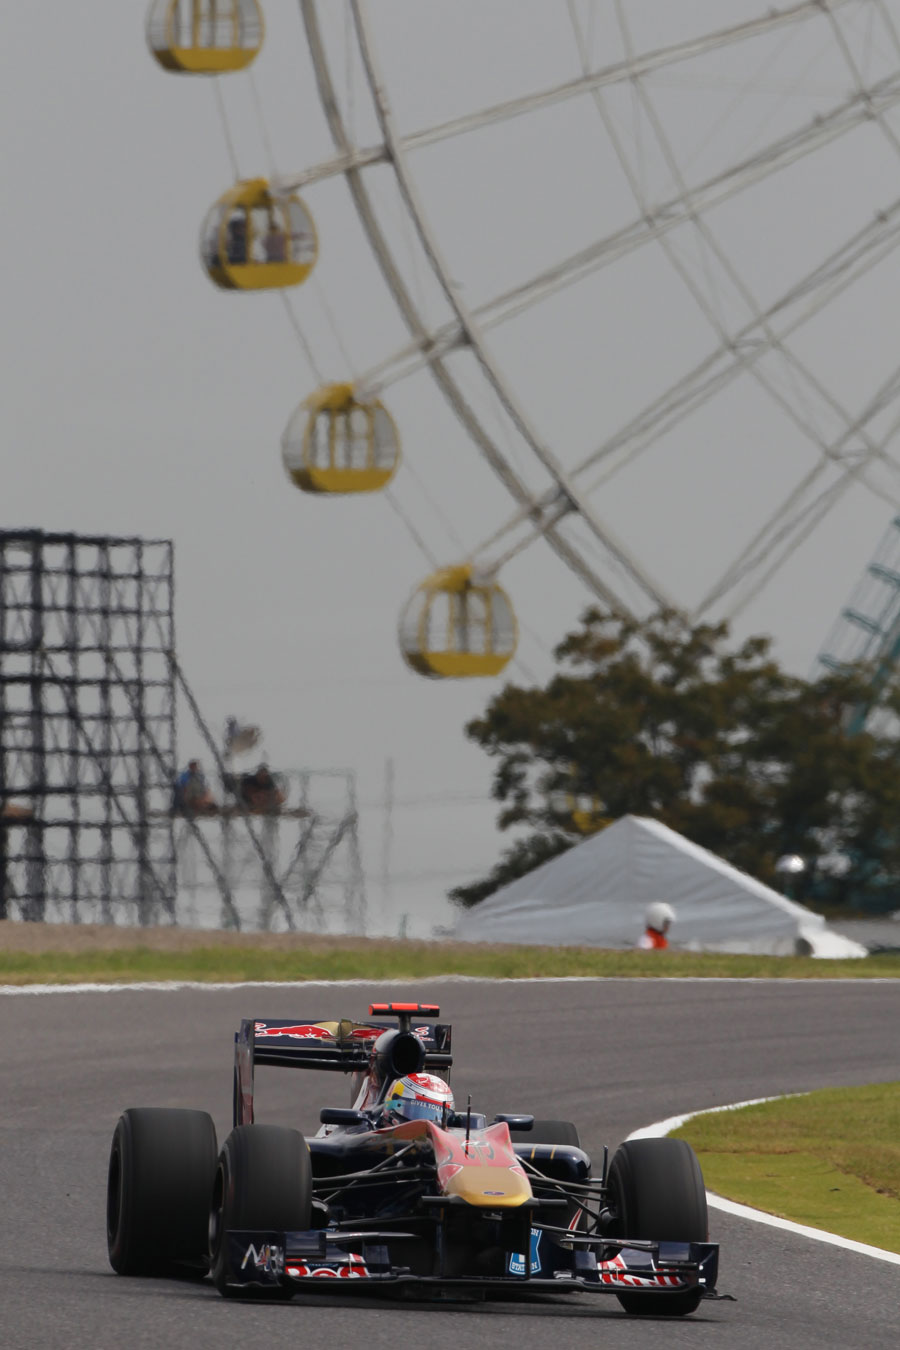 Sebastien Buemi on track in his Toro Rosso